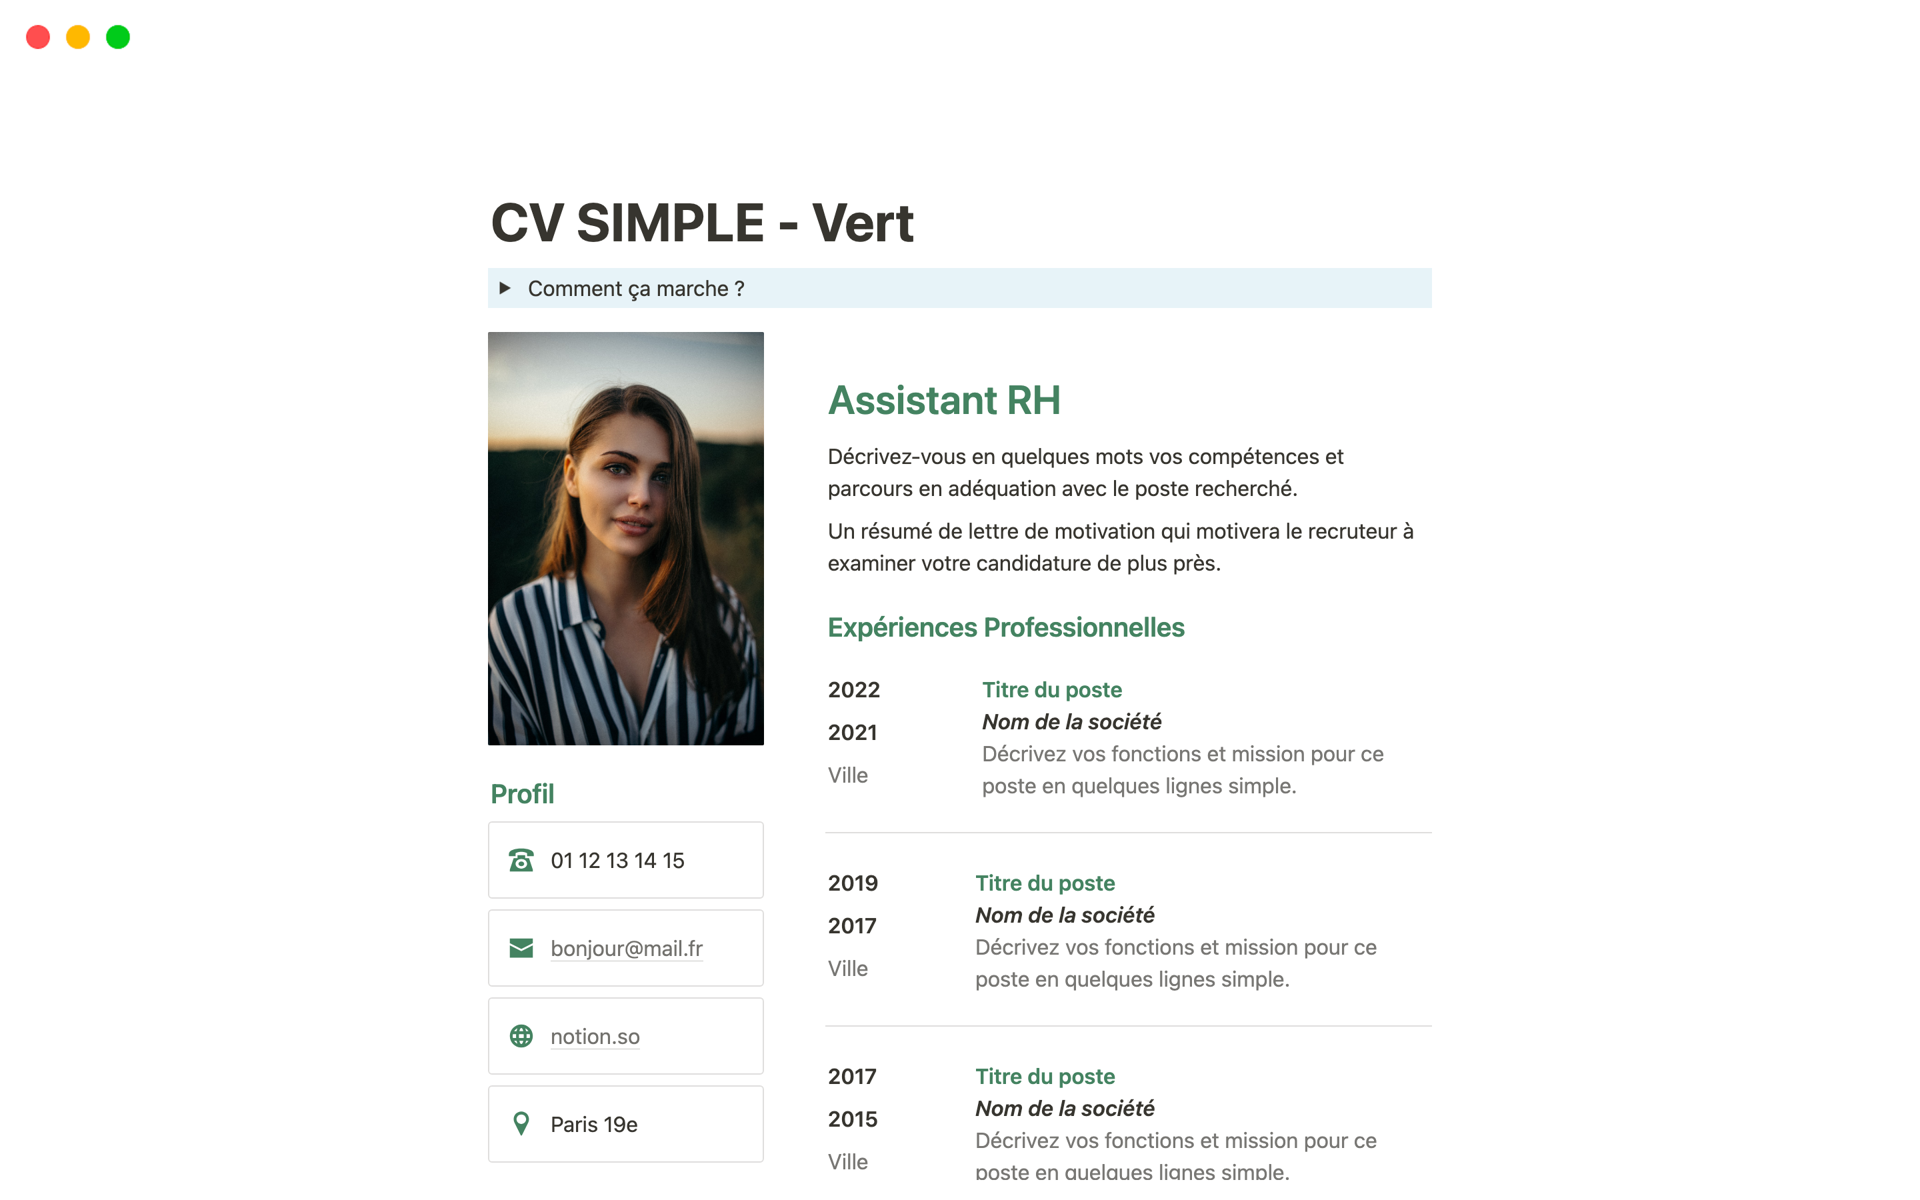 Avec les templates de CV Notion d'Harmony & Planification, tu peux facilement créer un CV professionnel en quelques minutes seulement.